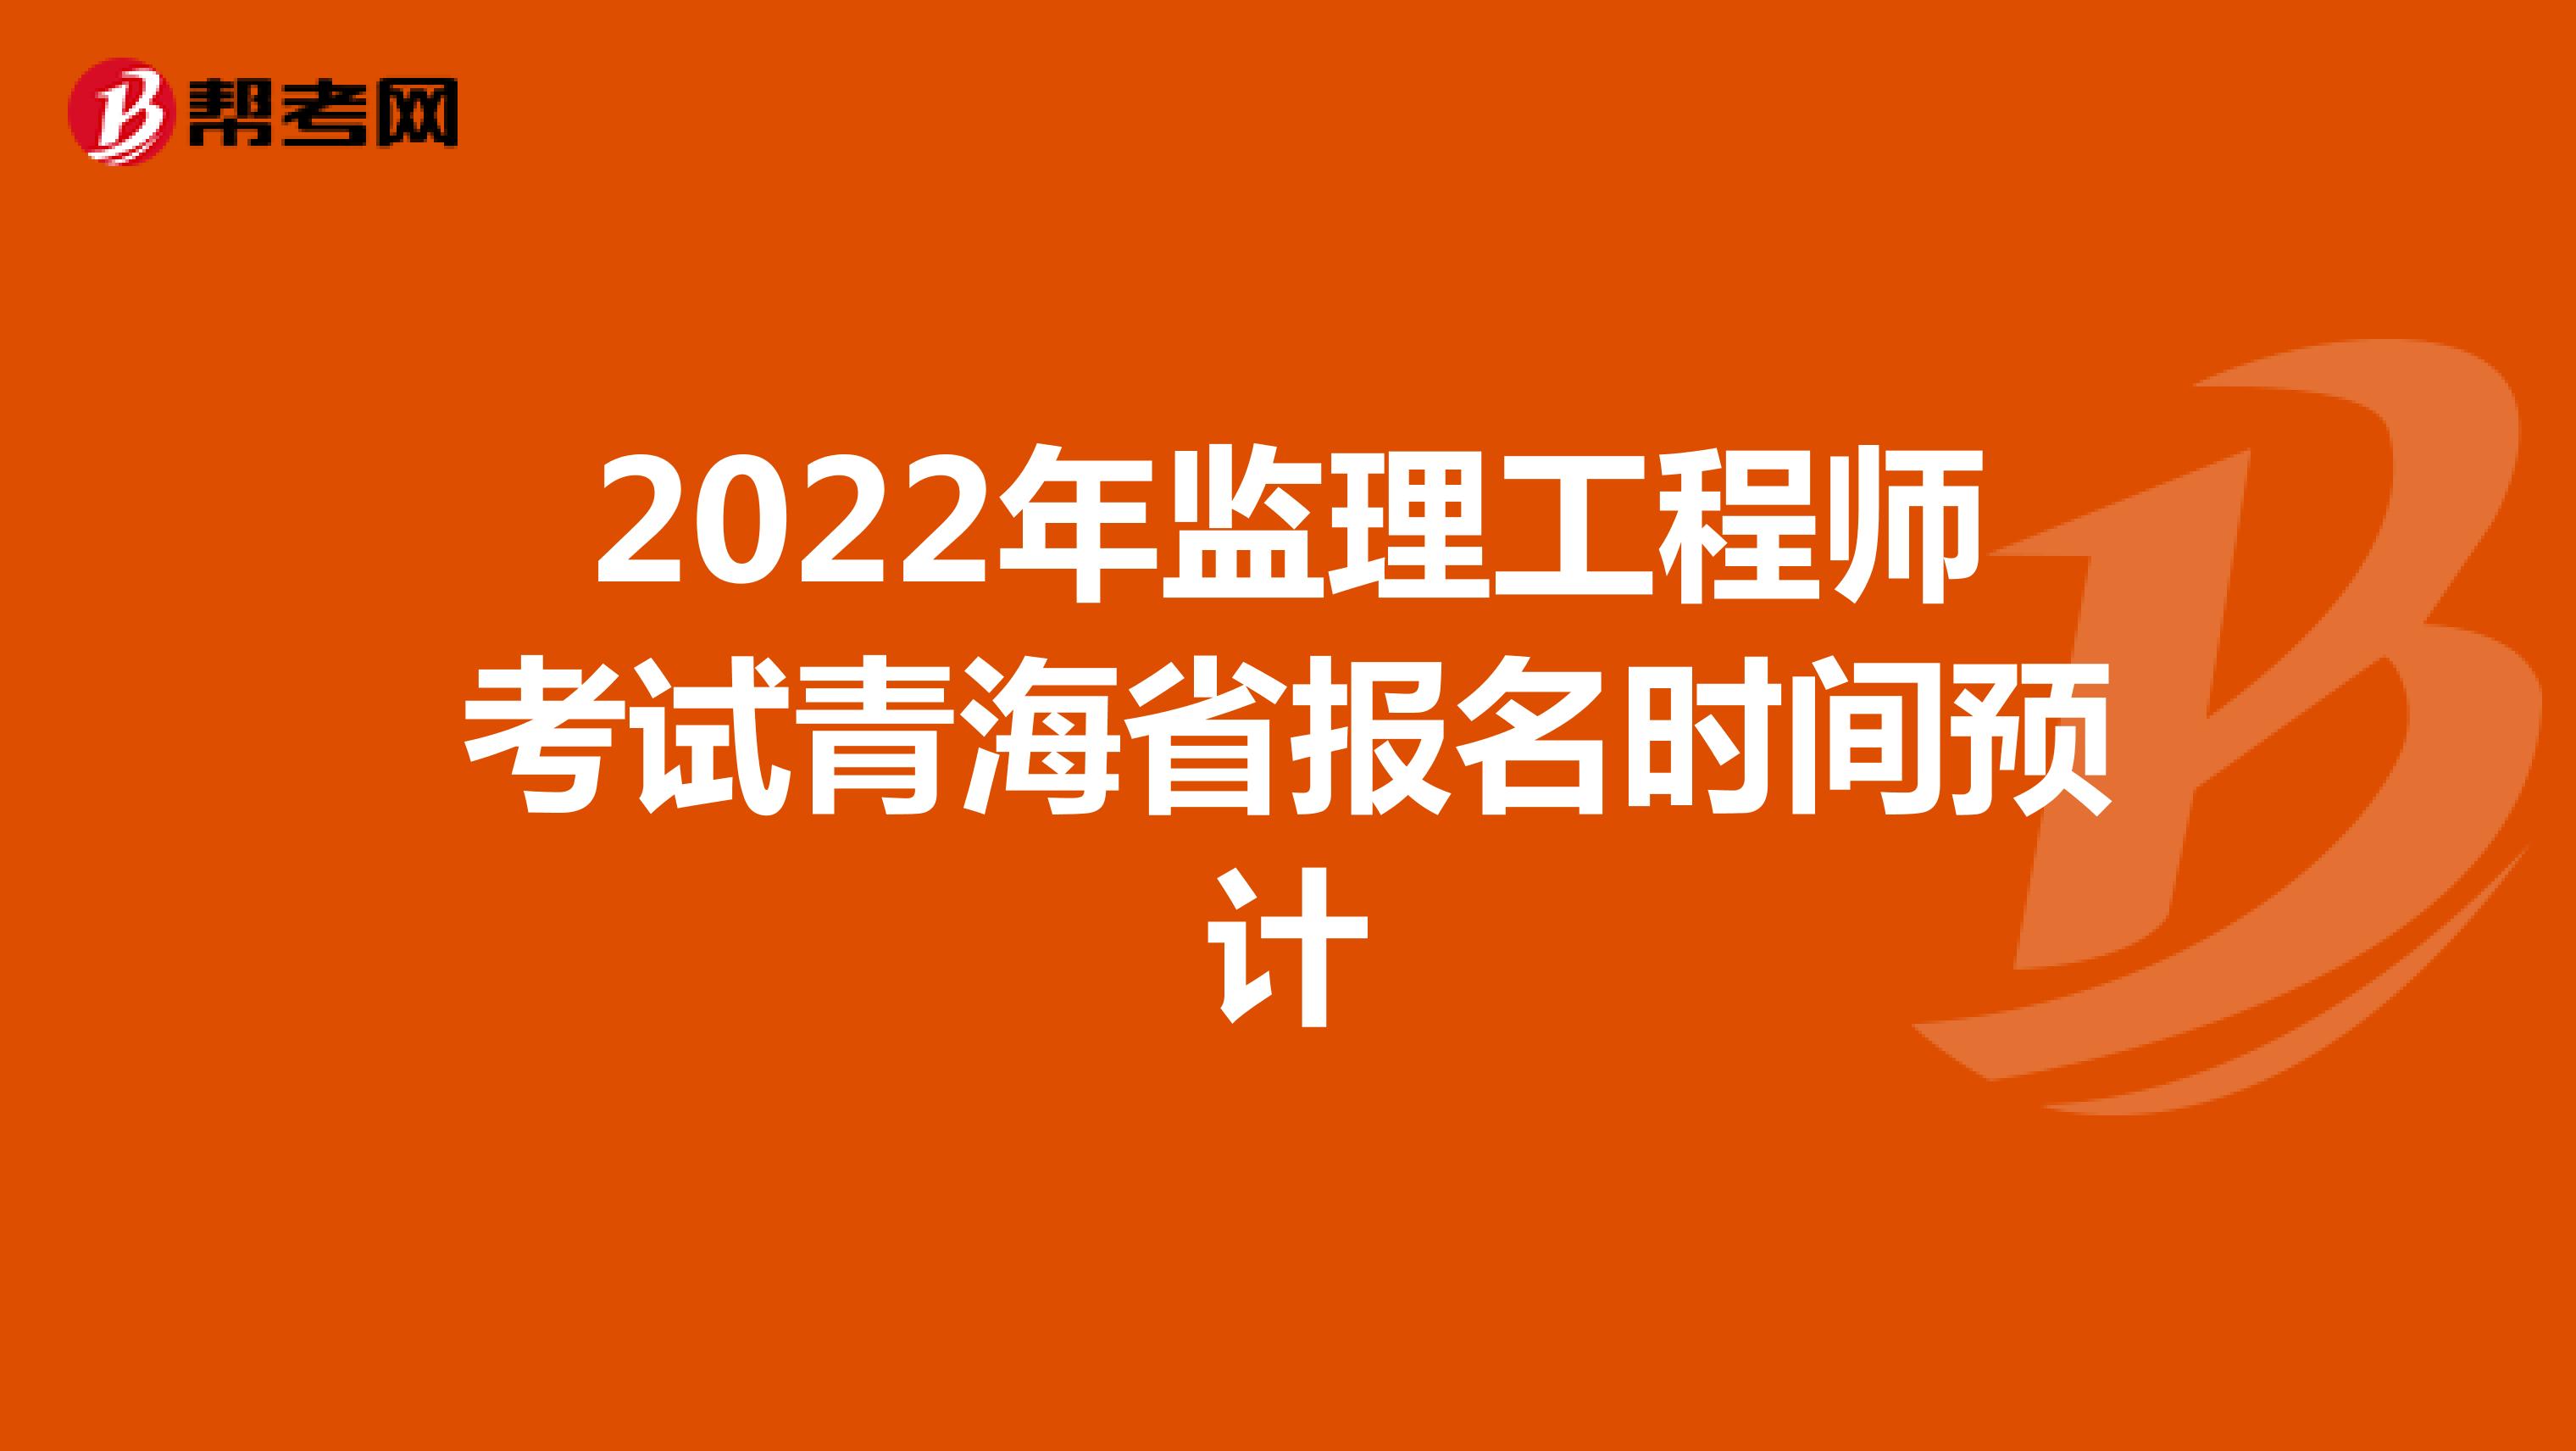 2022年监理工程师考试青海省报名时间预计